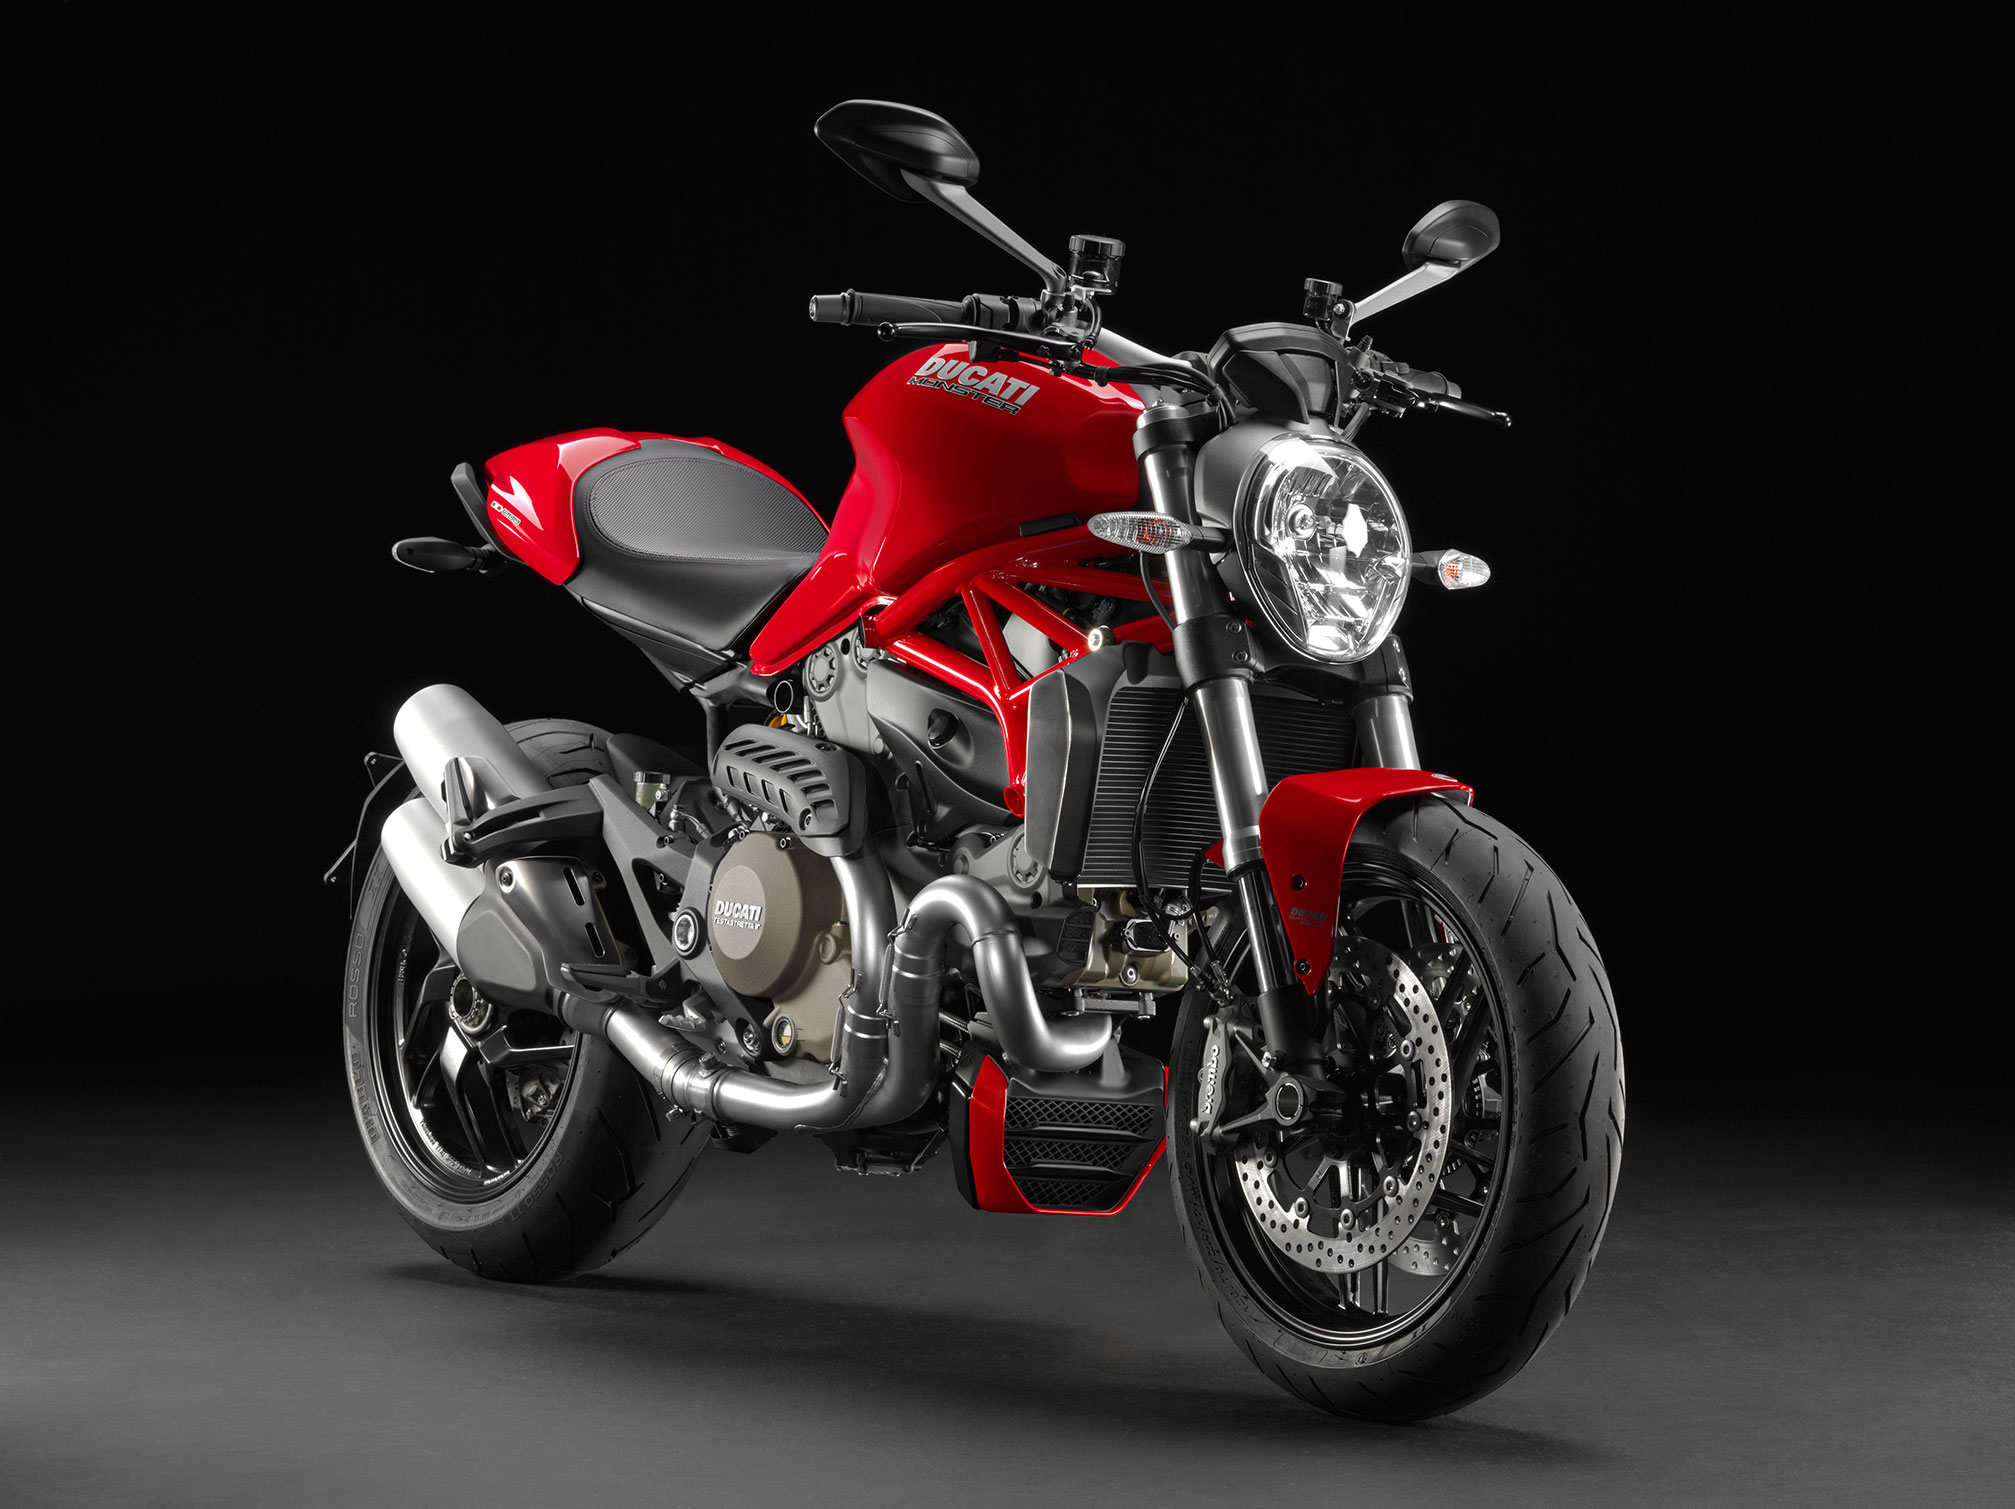 2015 Ducati Monster 1200 Review